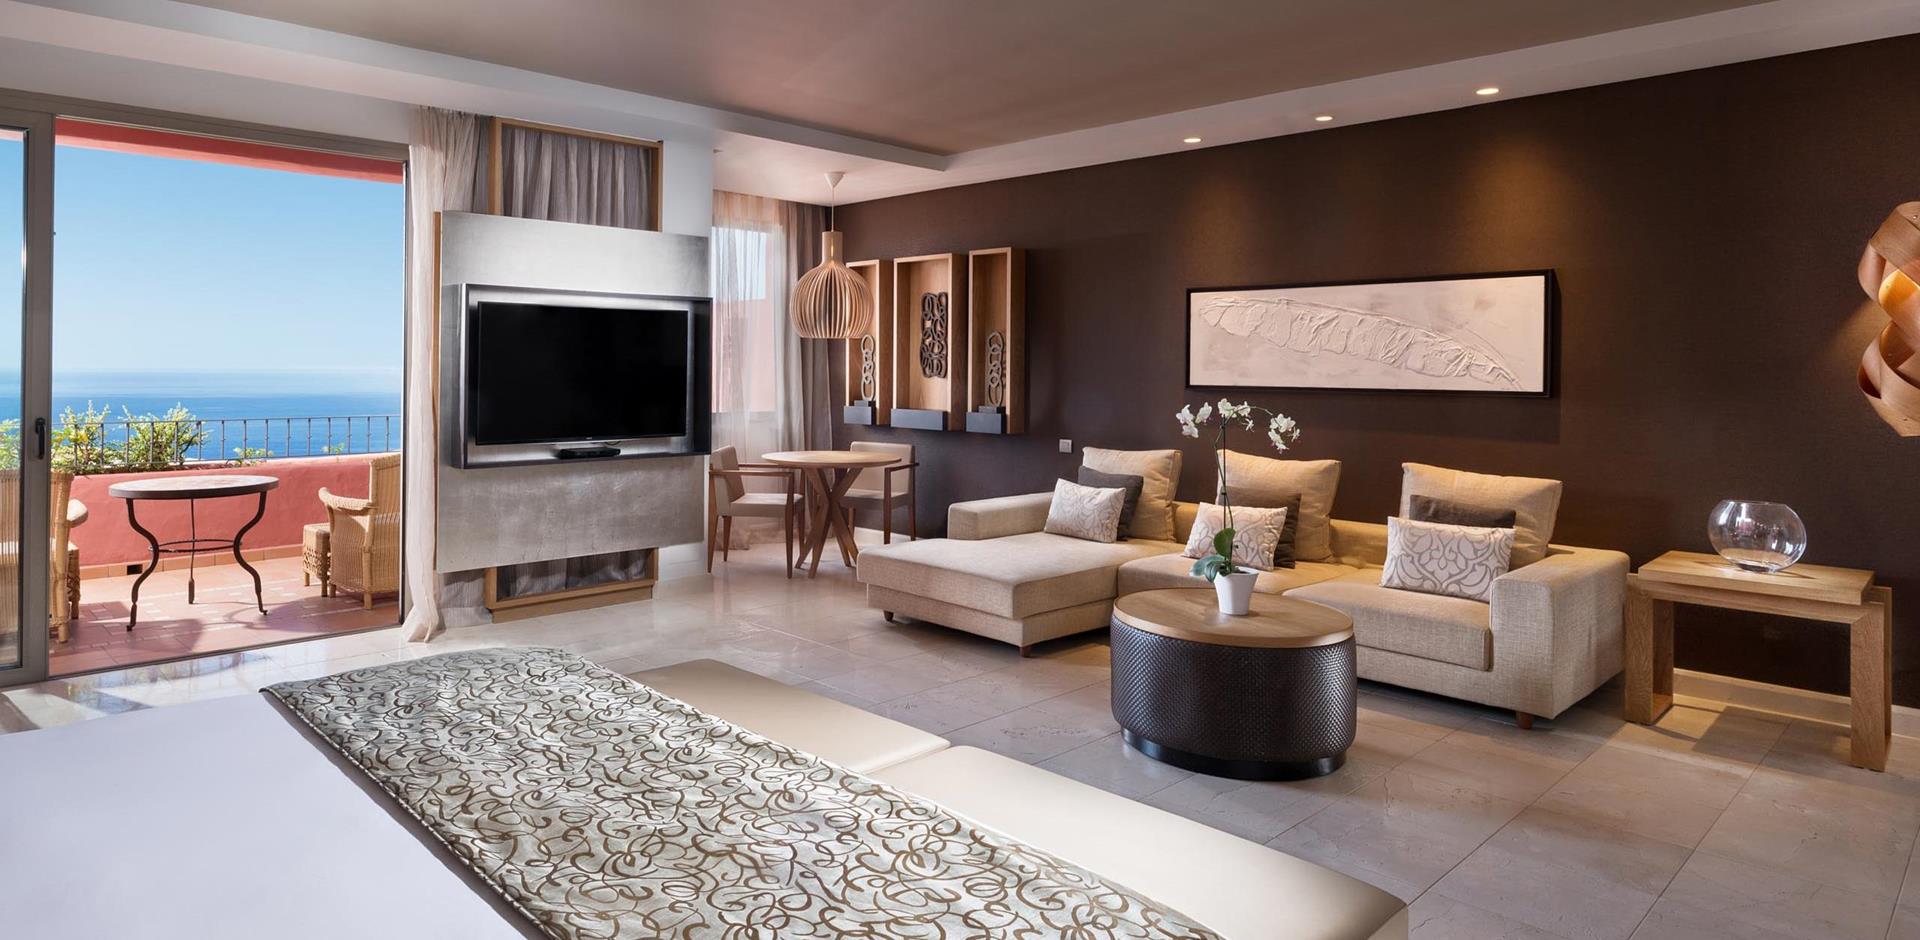 Junior suite, The Ritz-Carlton Tenerife, Abama, Spain